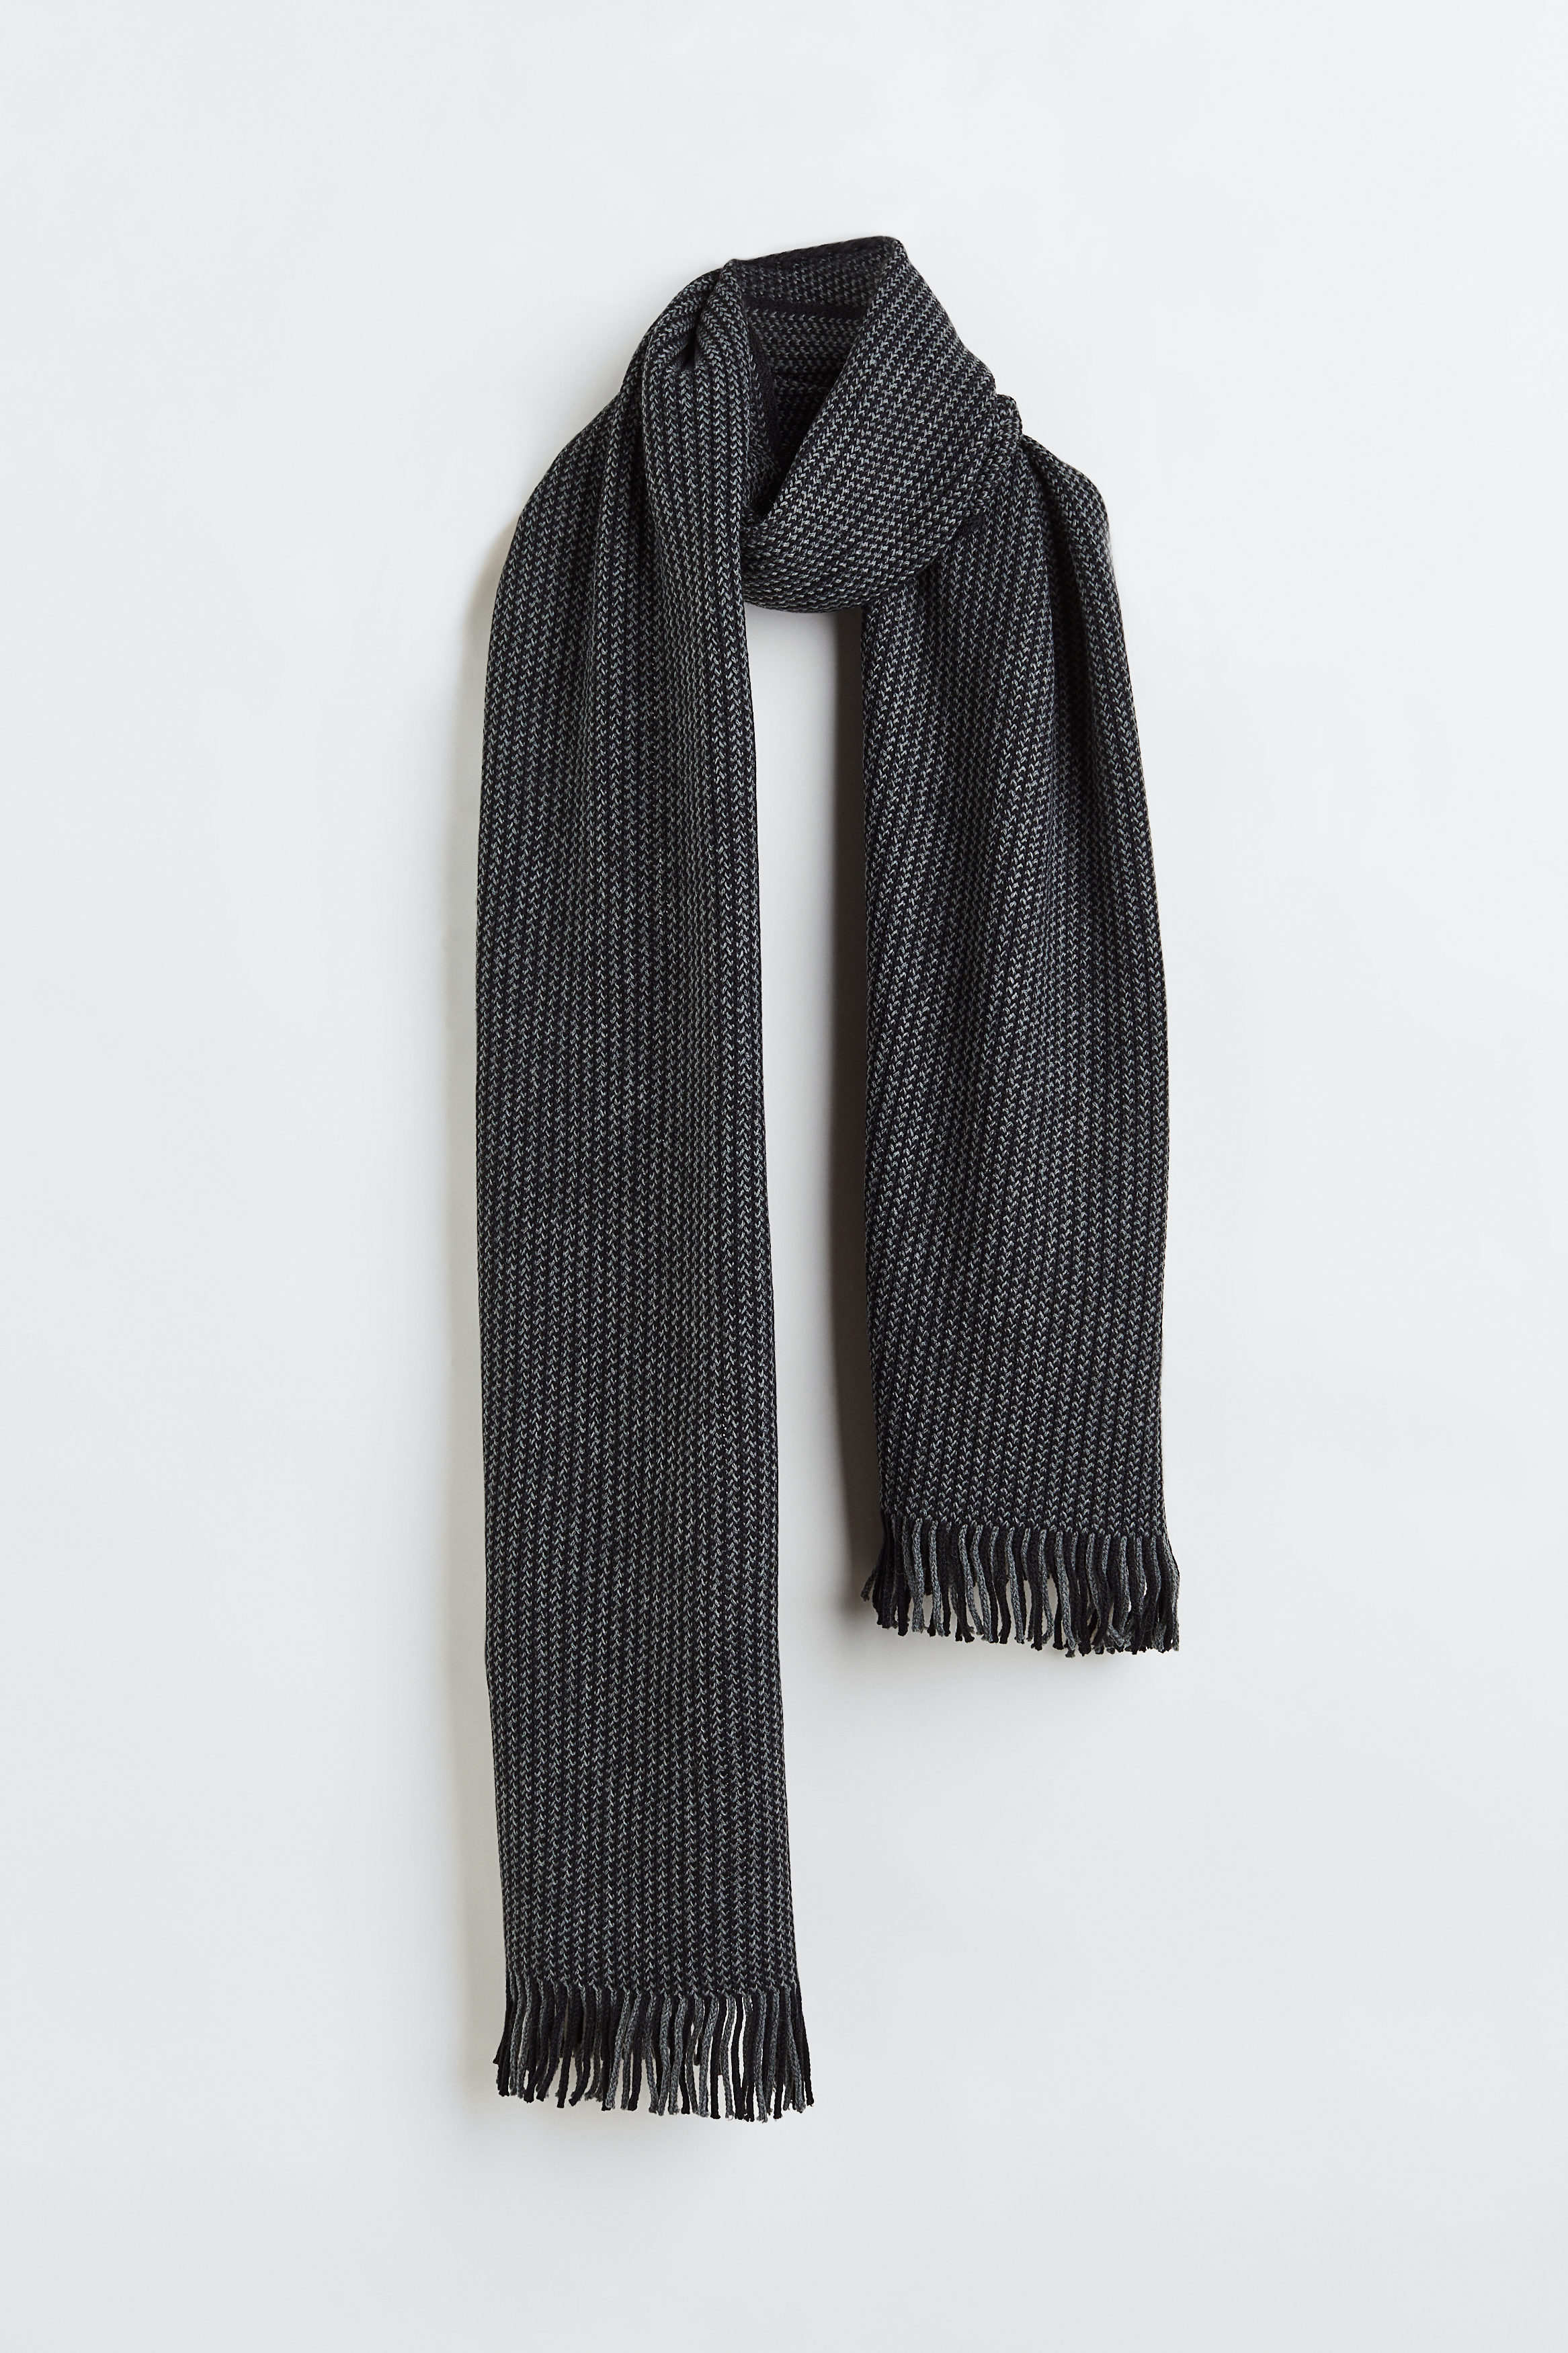 Billede af H&M Ribstrikket Halstørklæde Grå/mønstret, Halstørklæder. Farve: Grey/patterned I størrelse Onesize